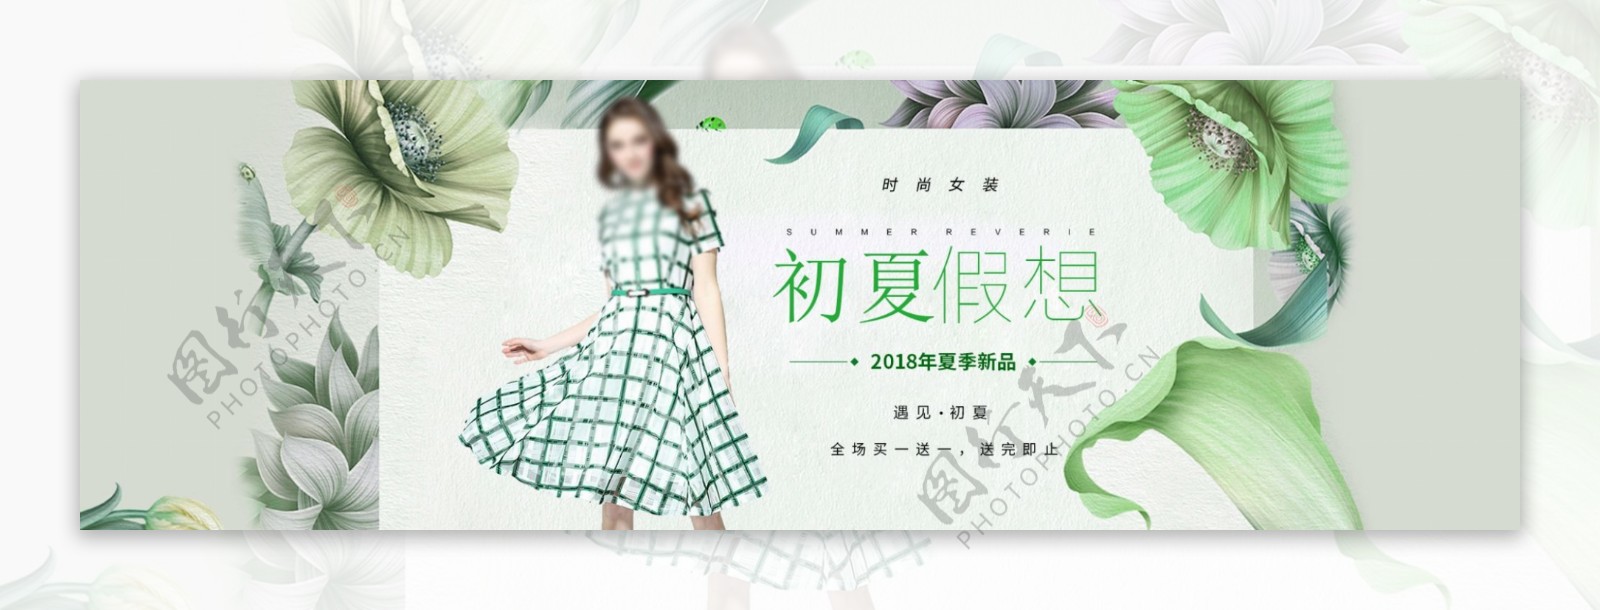 电商淘宝2018夏季新品绿色女装海报模板